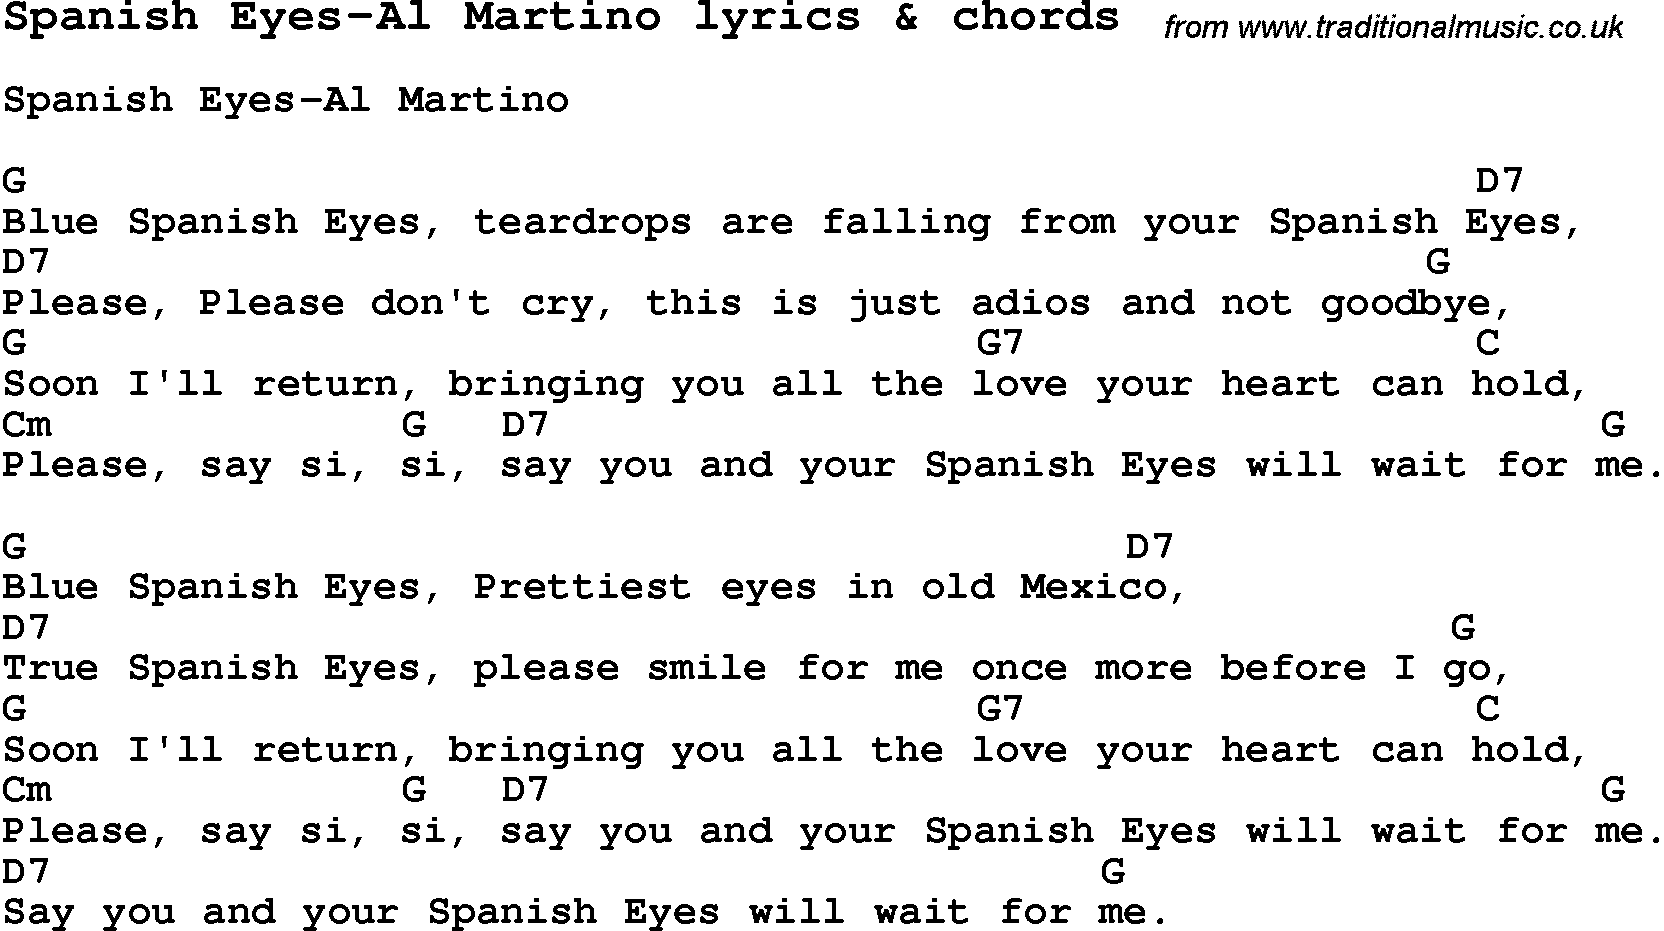 Love Song Lyrics for: Spanish Eyes-Al Martino with chords for Ukulele, Guitar Banjo etc.